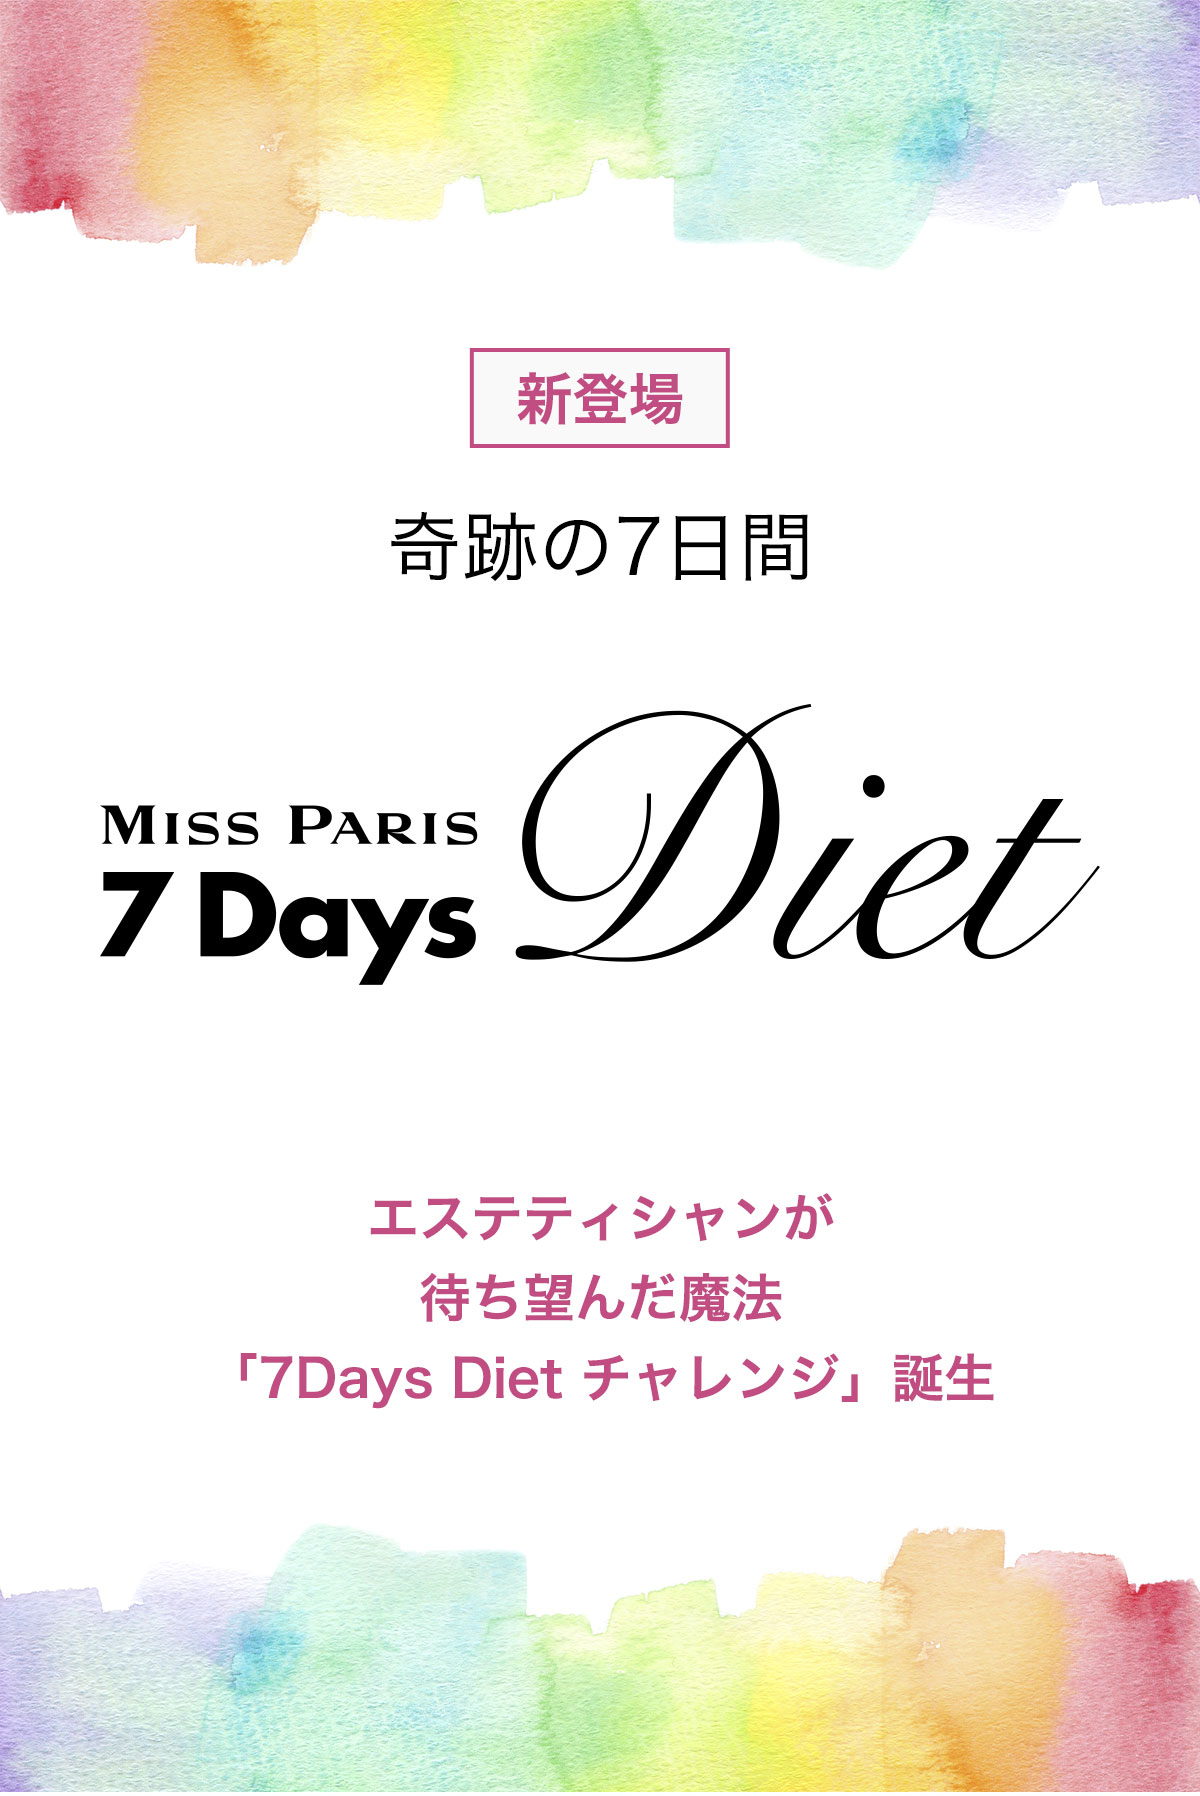 7Days Diet | ダイエットをするならミスパリ ダイエットセンター